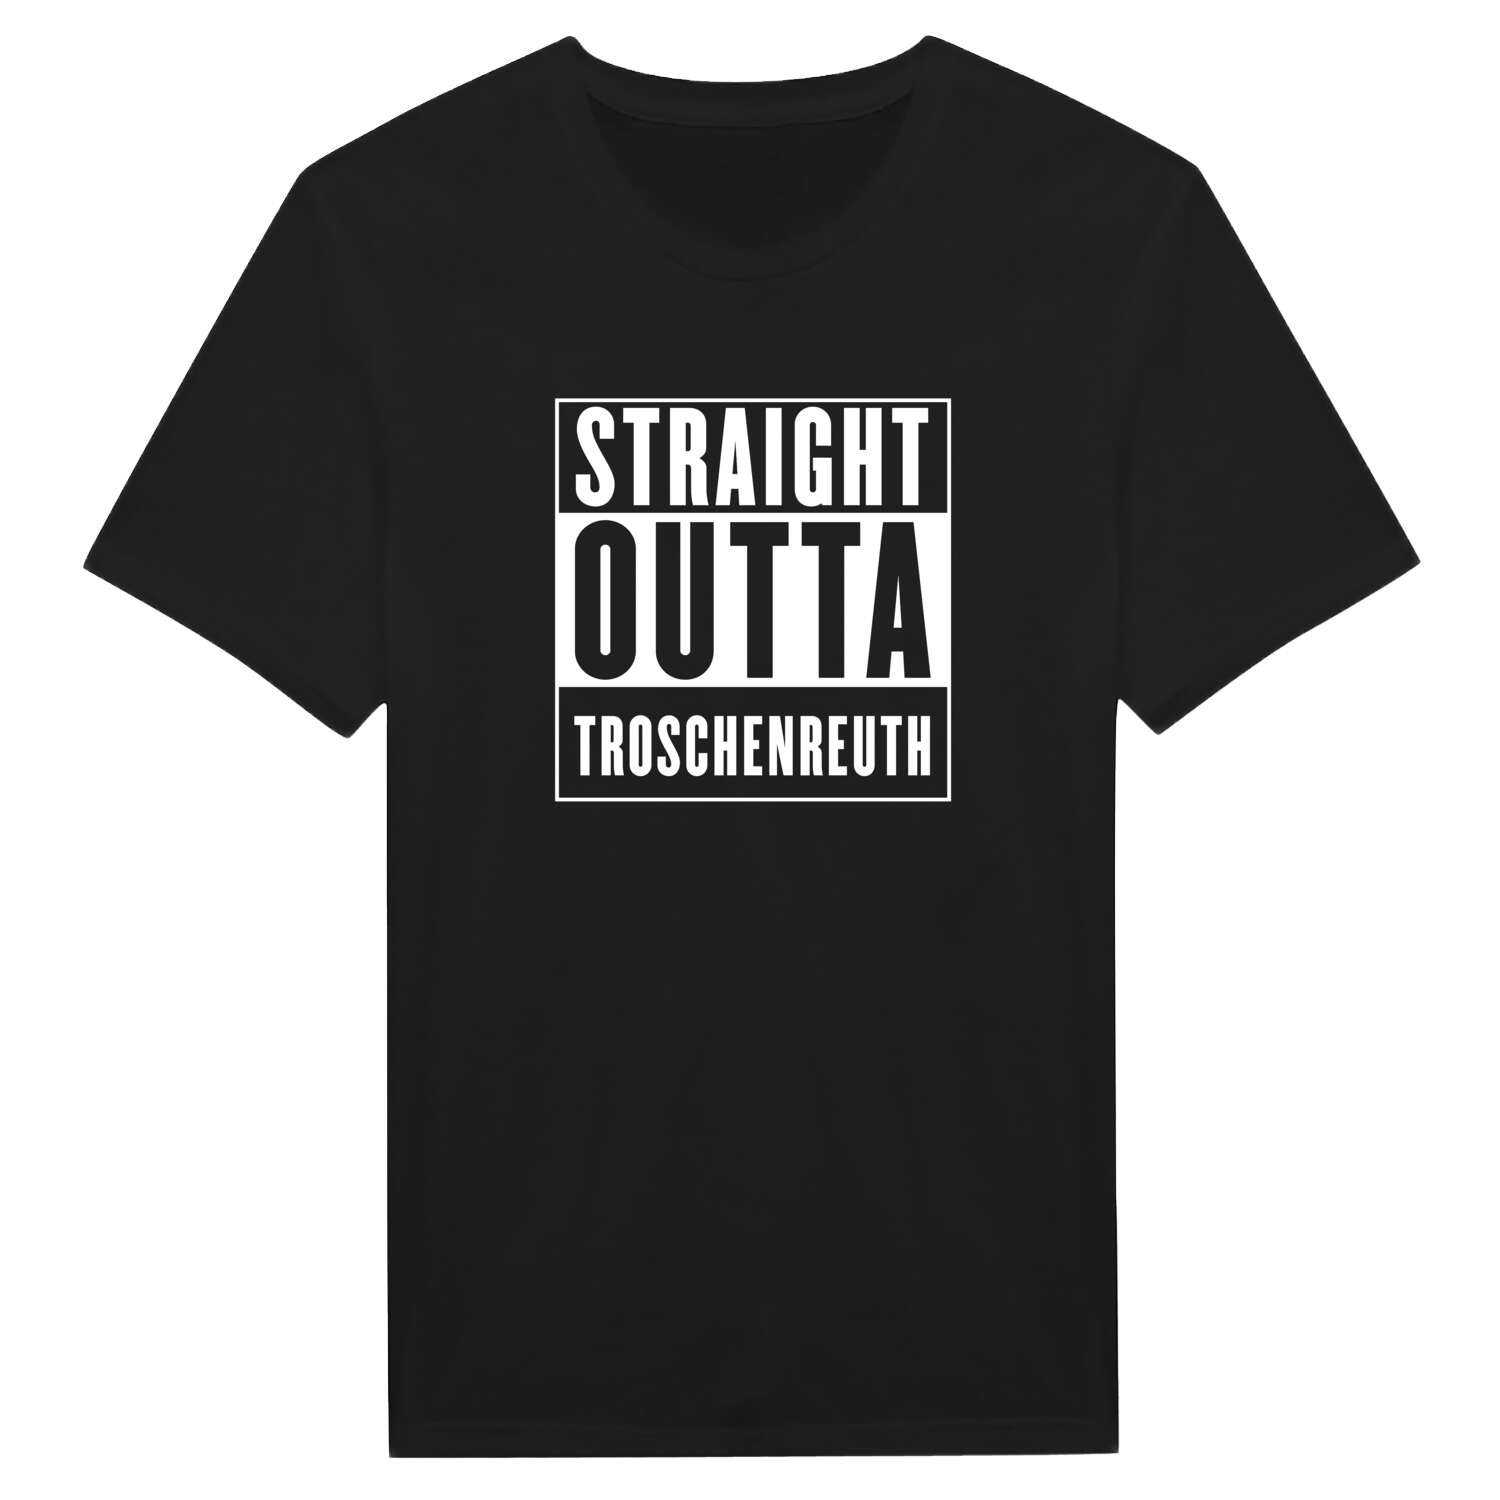 Troschenreuth T-Shirt »Straight Outta«